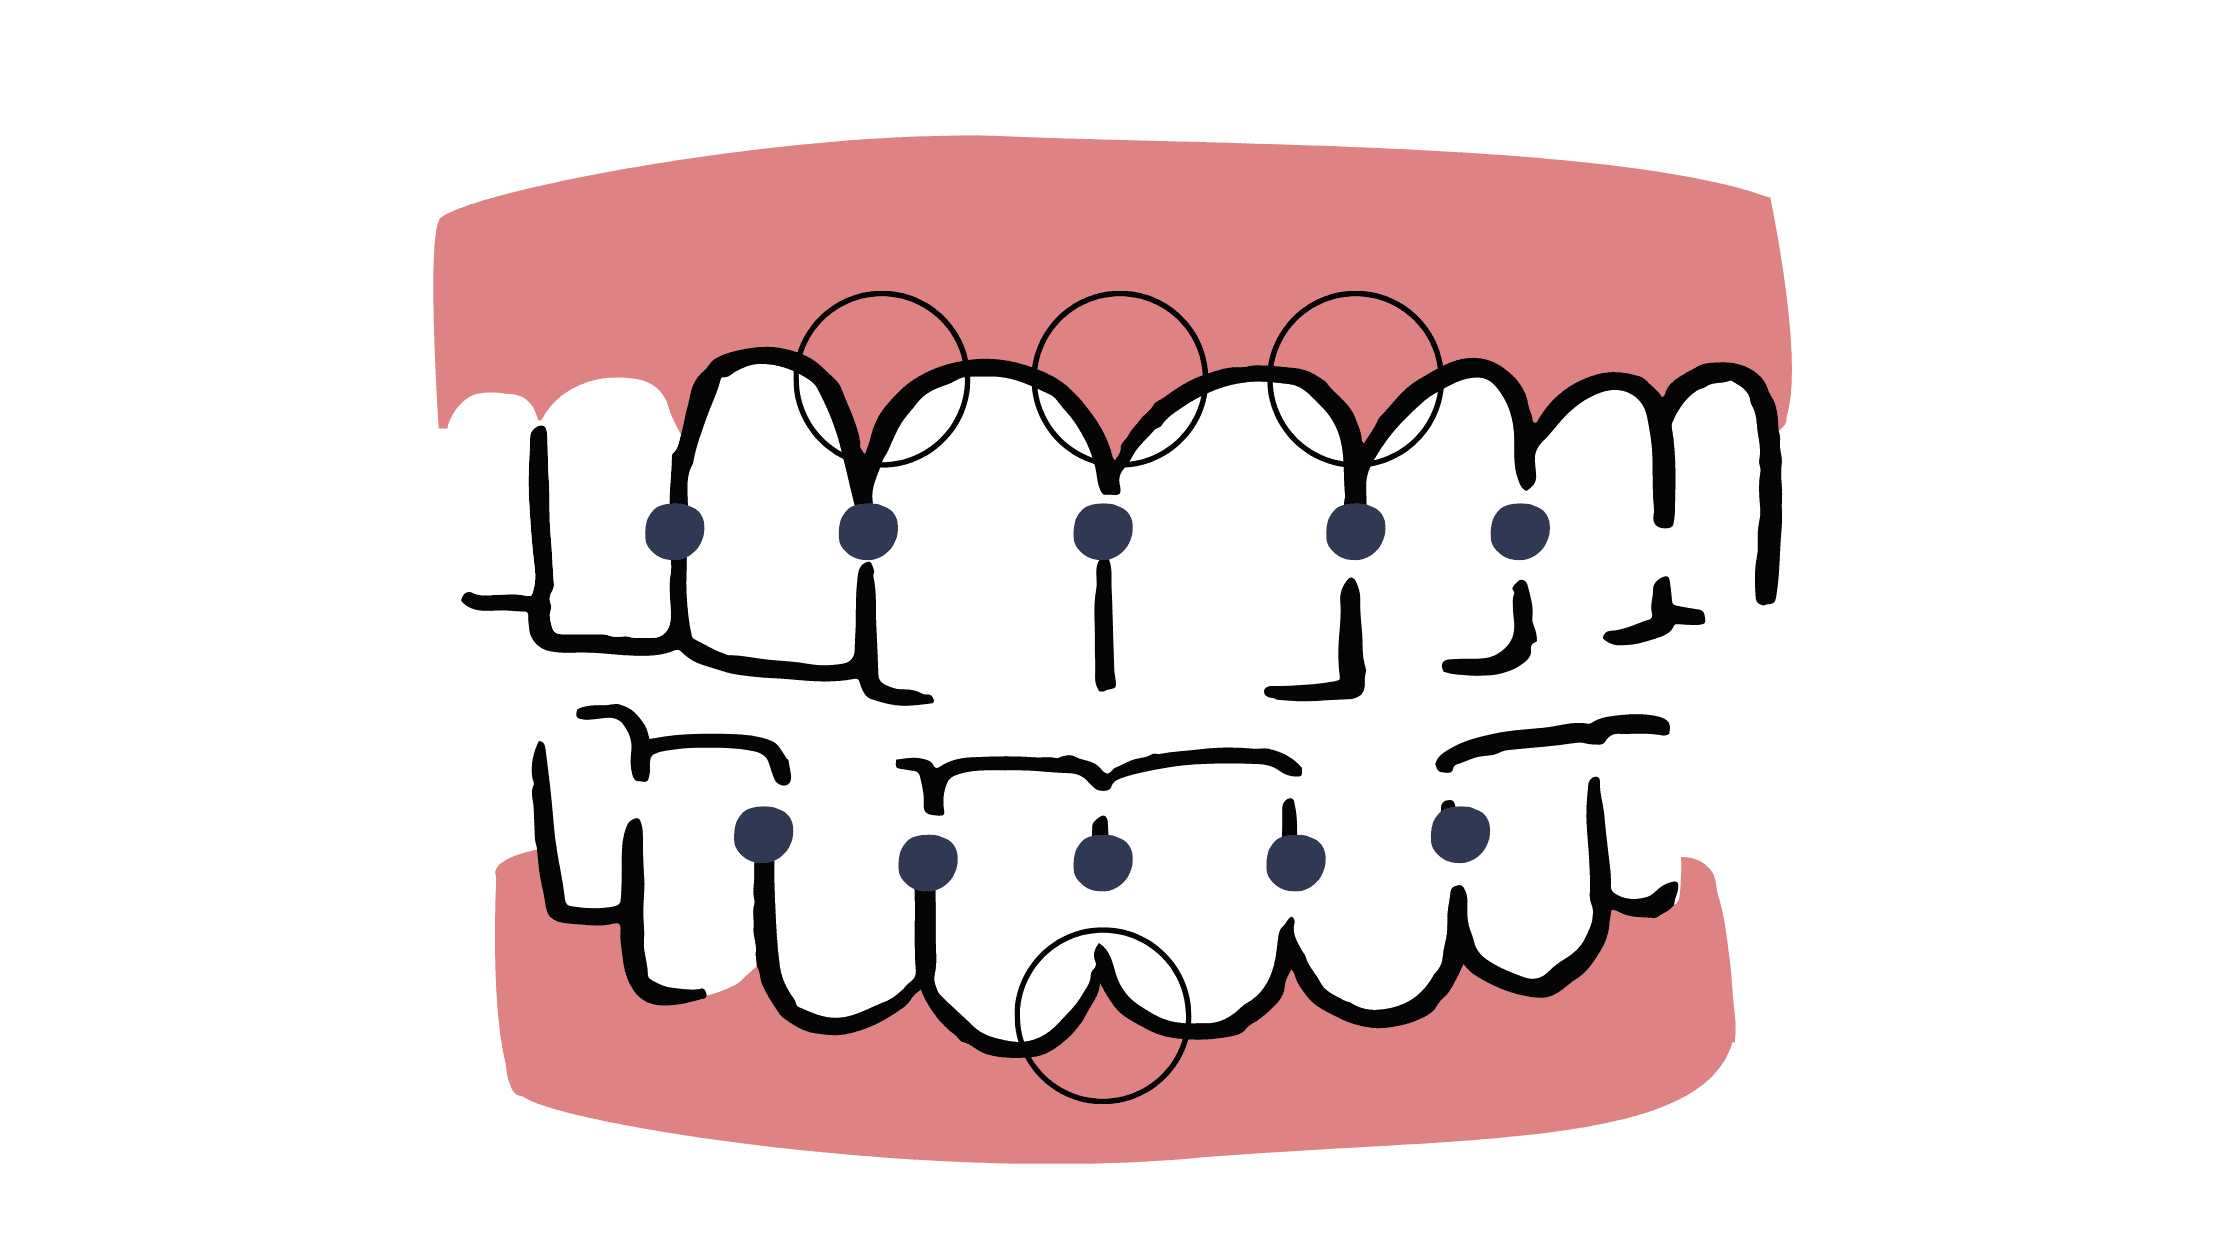 The area between teeth